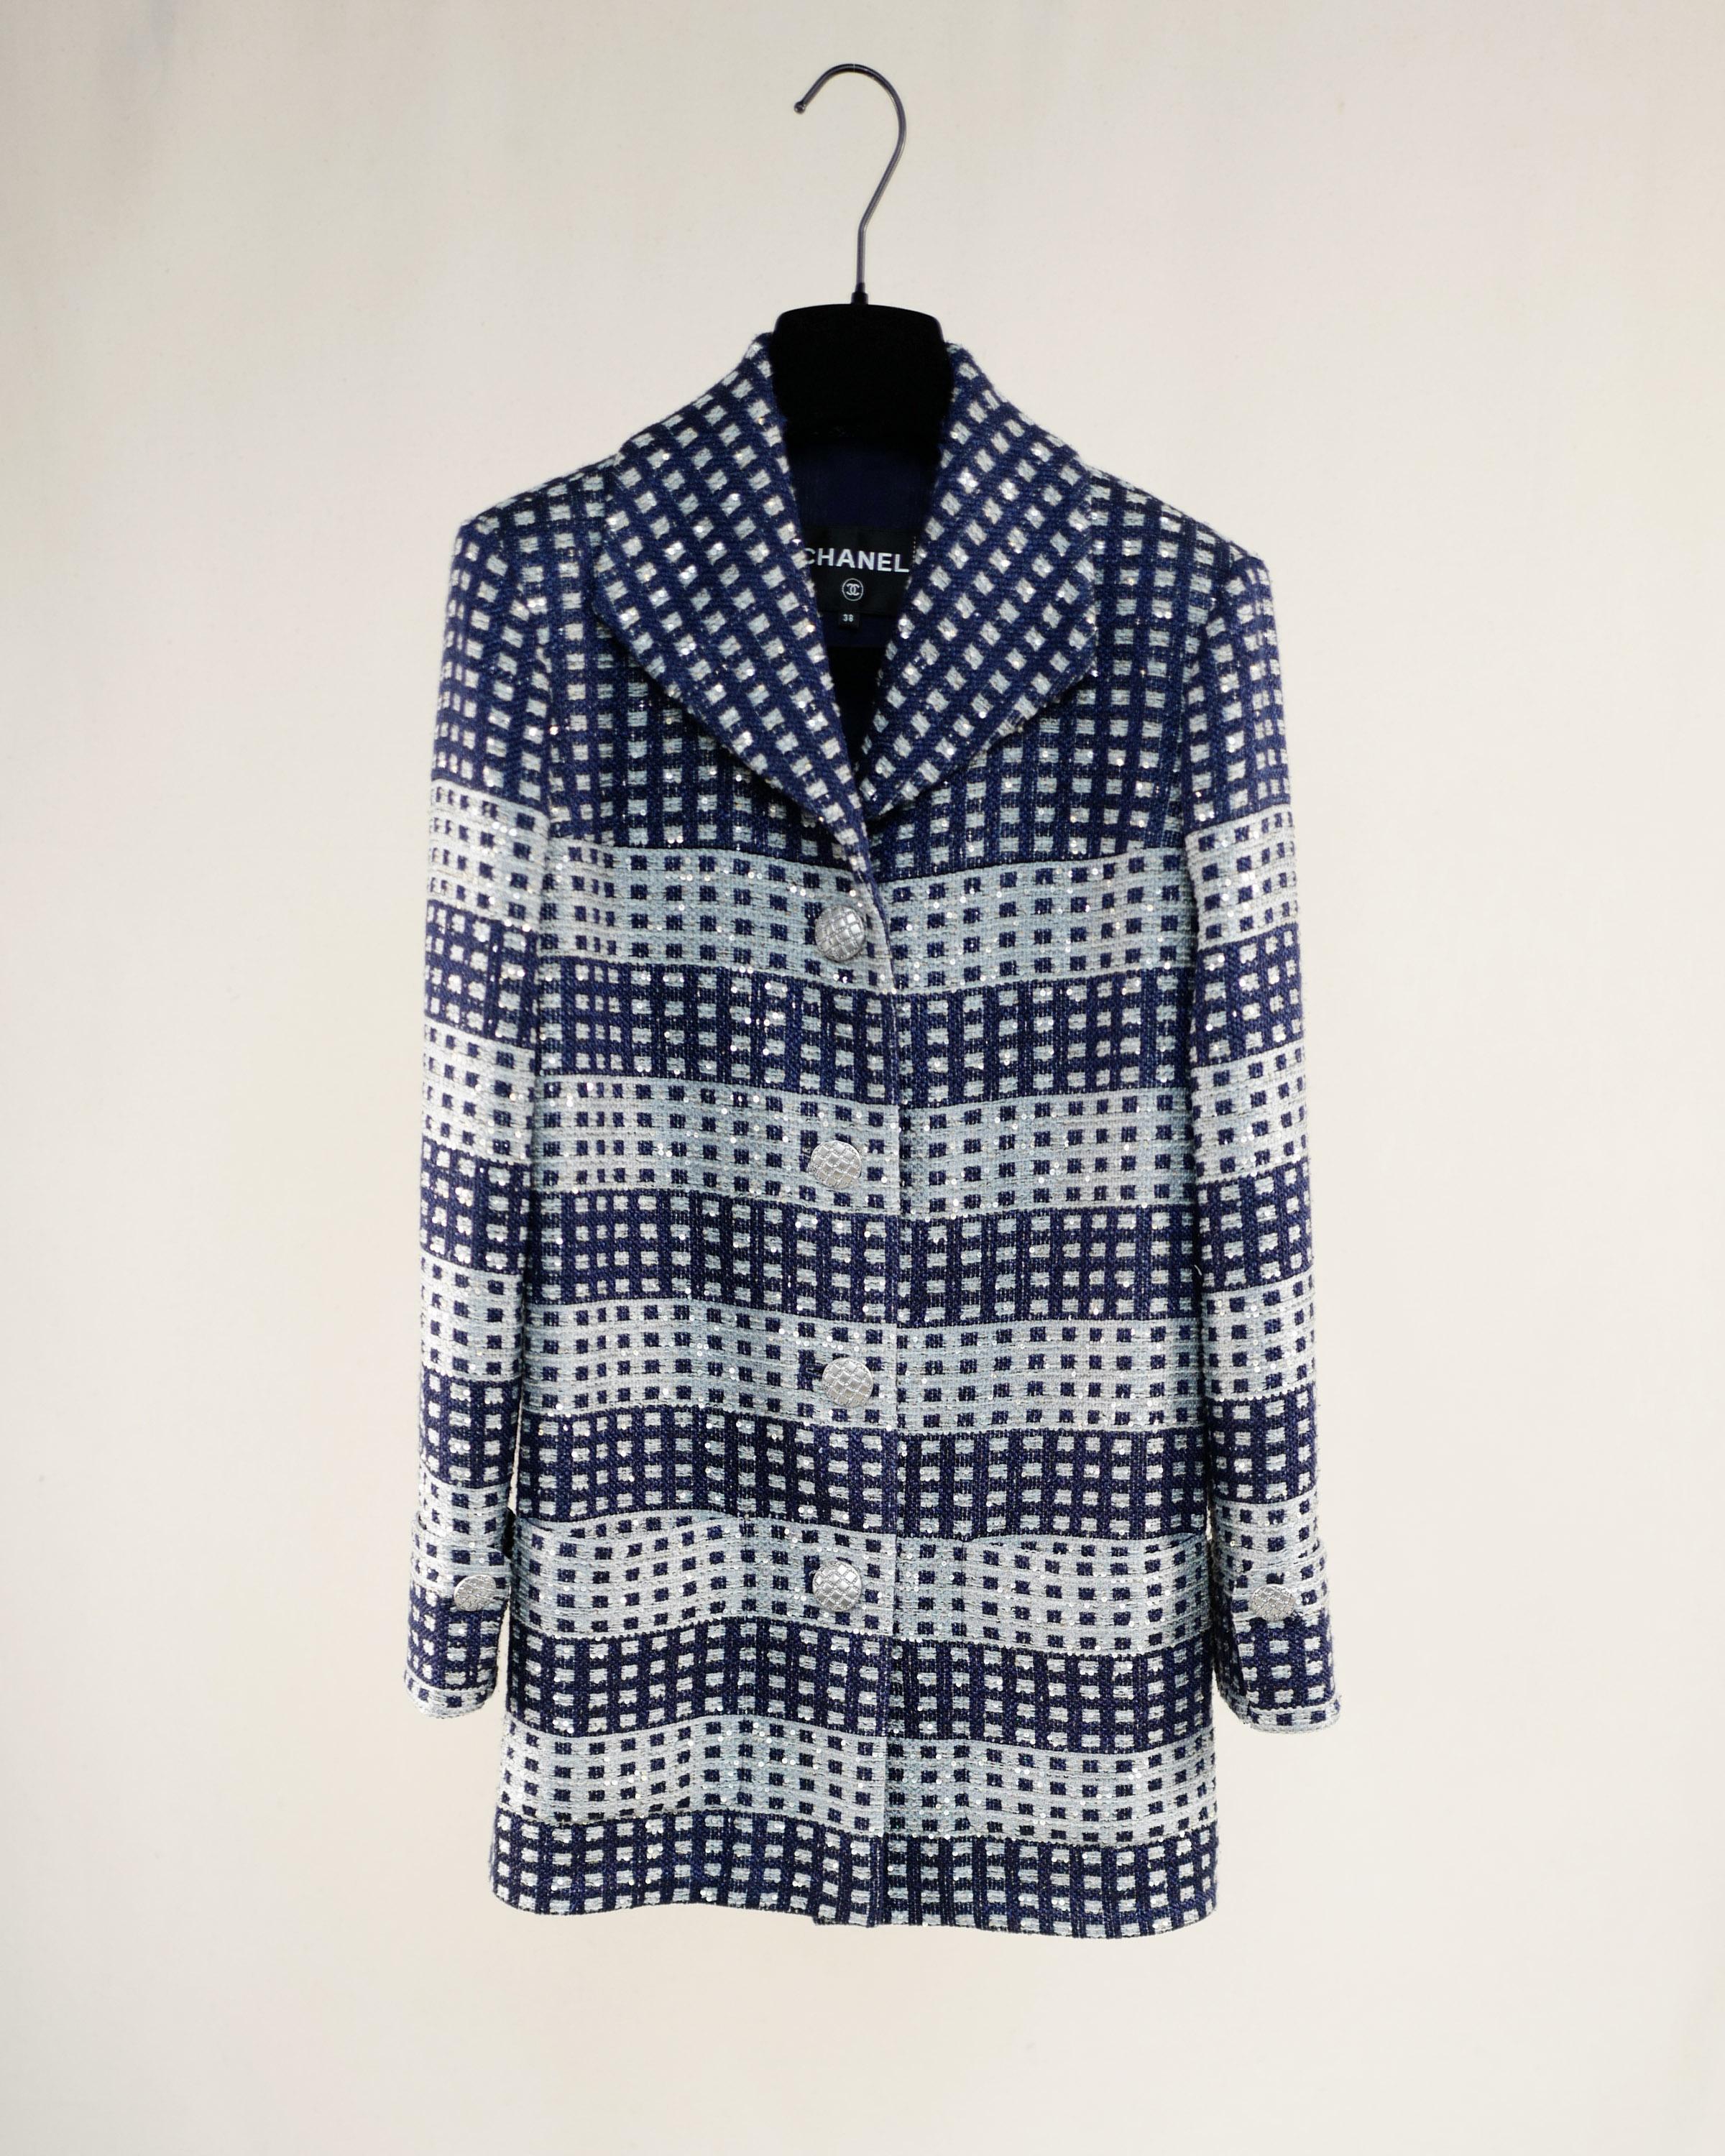 Nouvelle veste Chanel en tweed très précieux et magnifique de la marque Lesage, ornée de paillettes.
- Boutons du logo CC
Taille 38 FR.